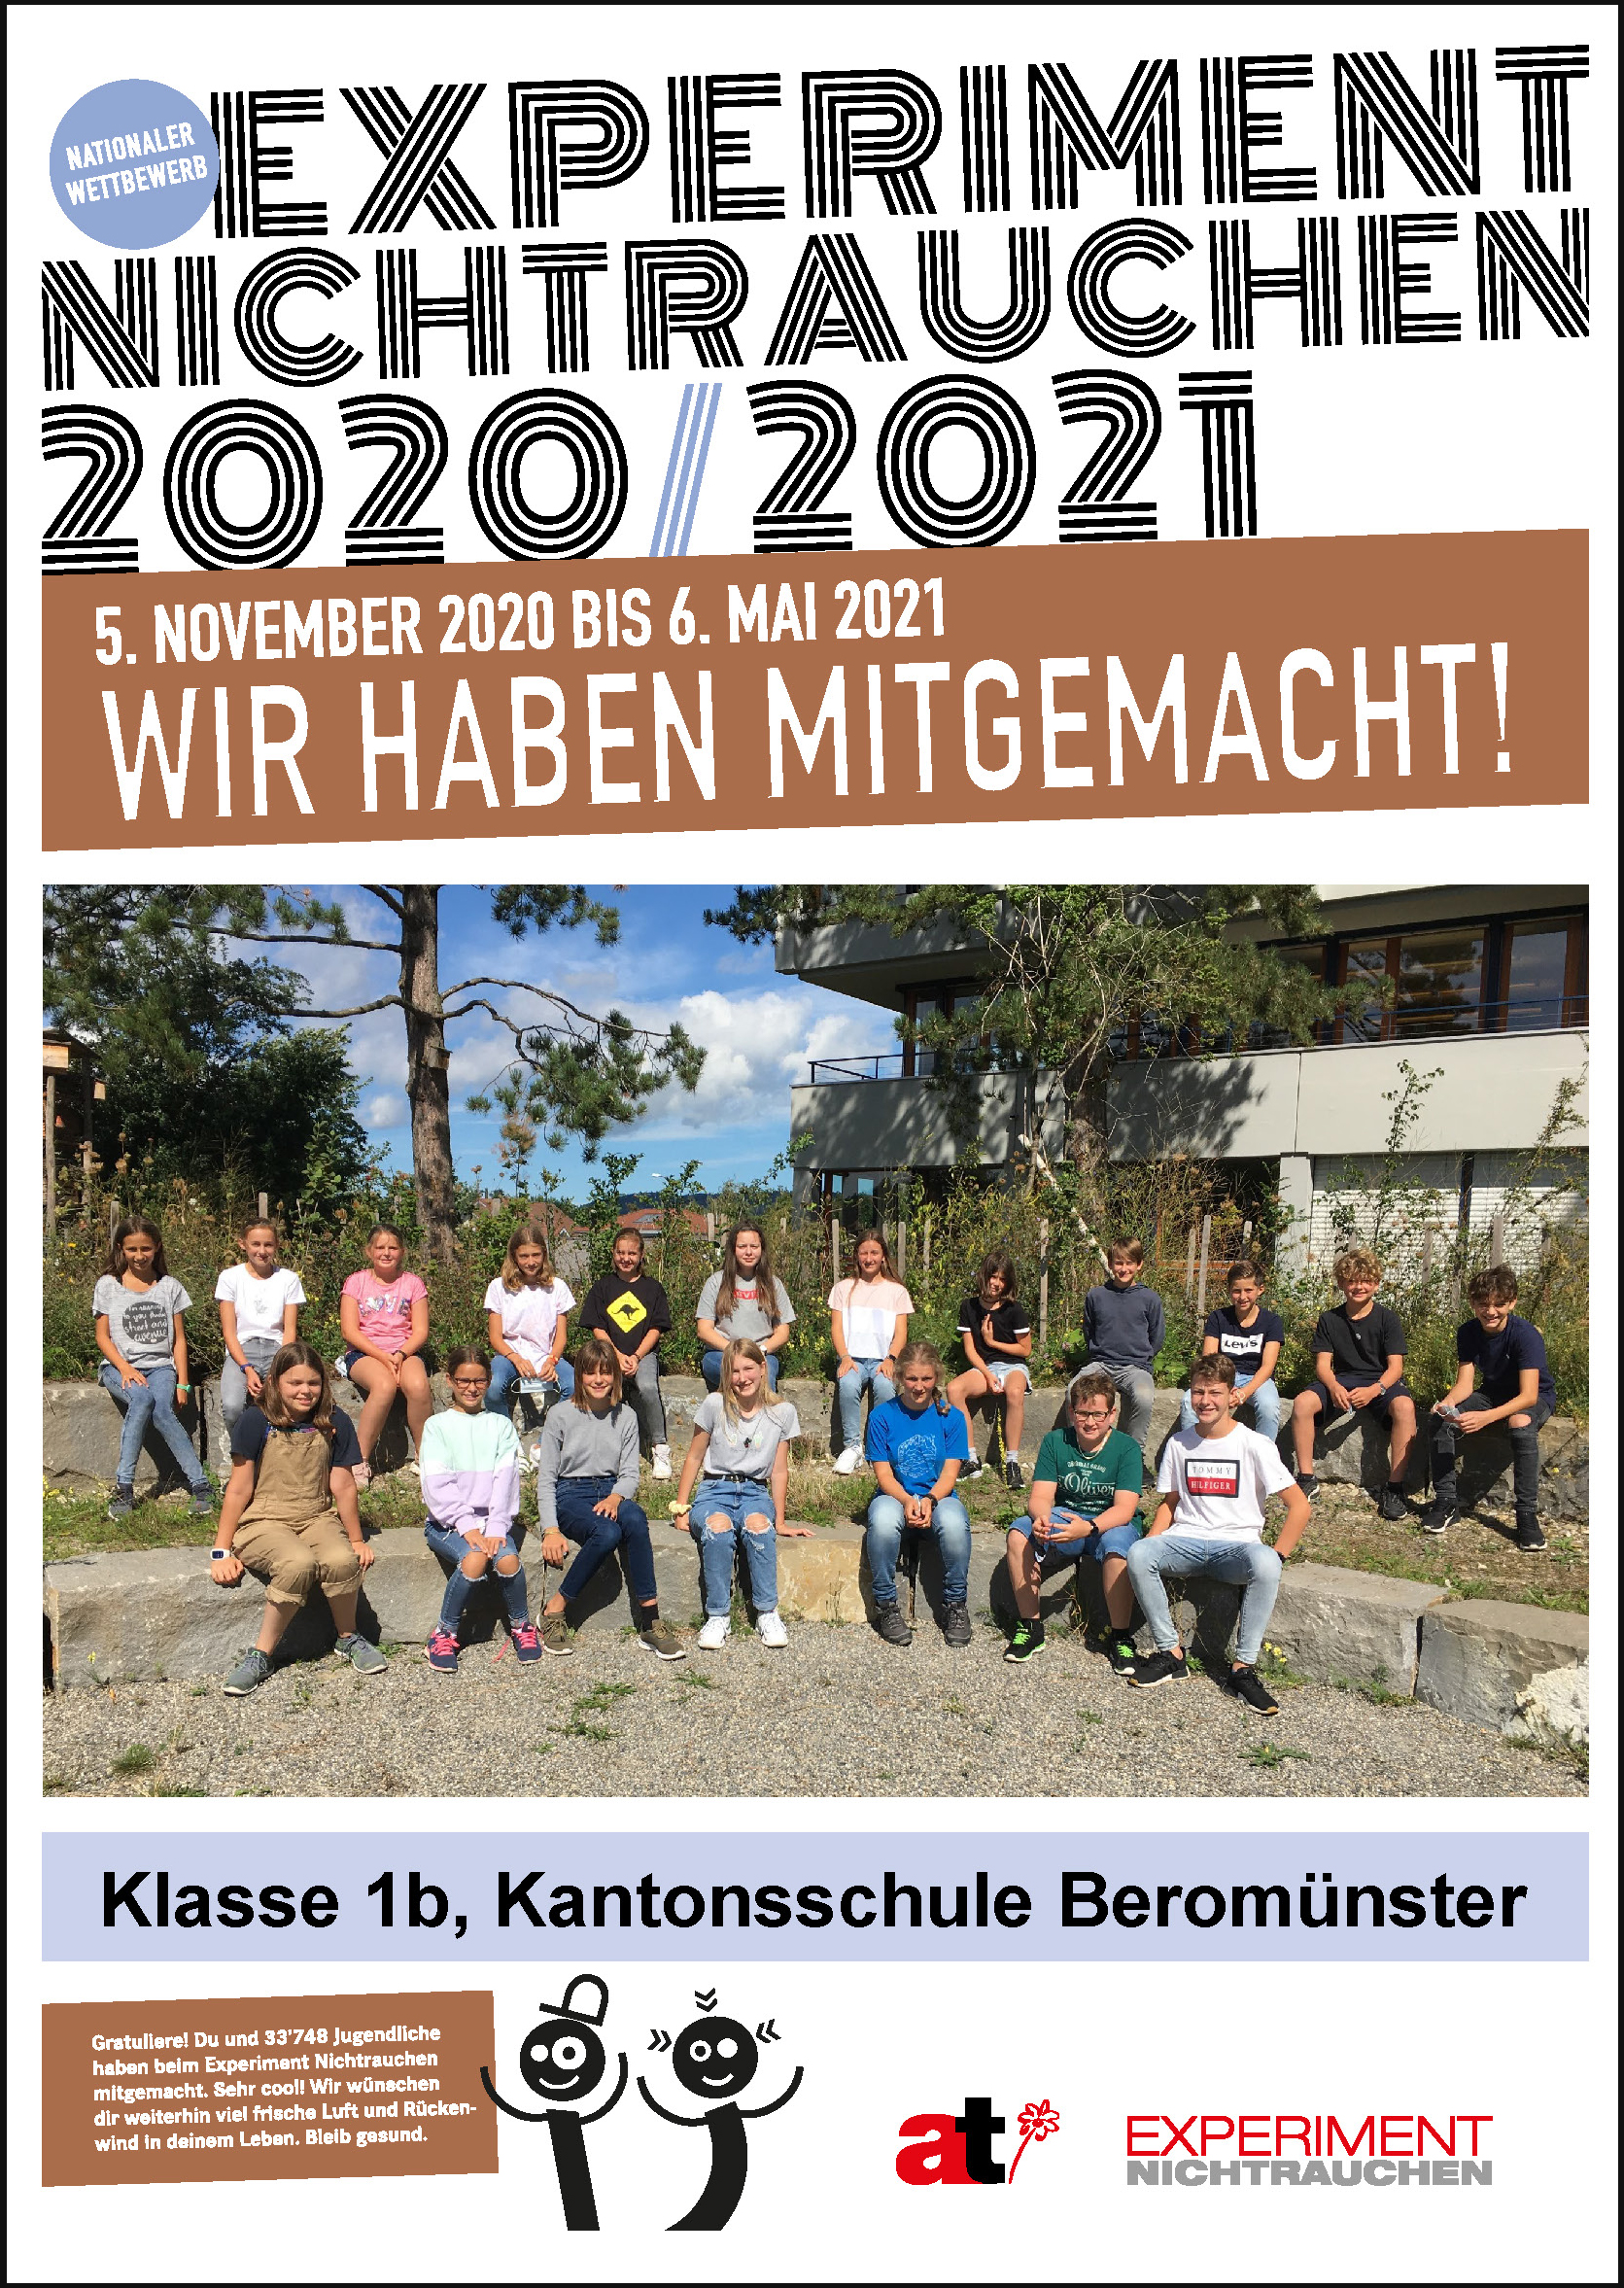 Urkunde Experiment Nichtrauchen 2020/2021 Klasse 1b Kantonsschule Beromünster